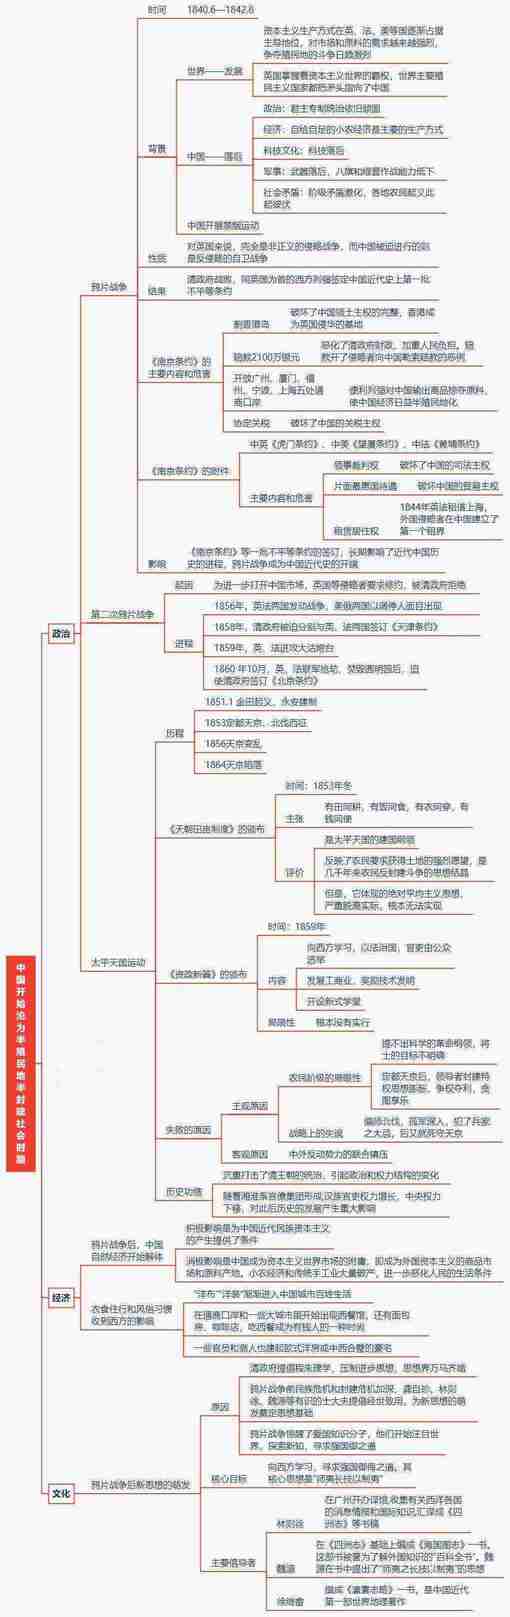 中国近代史思维导图，想搞清历史，这个必须看！清晰可打印！转发